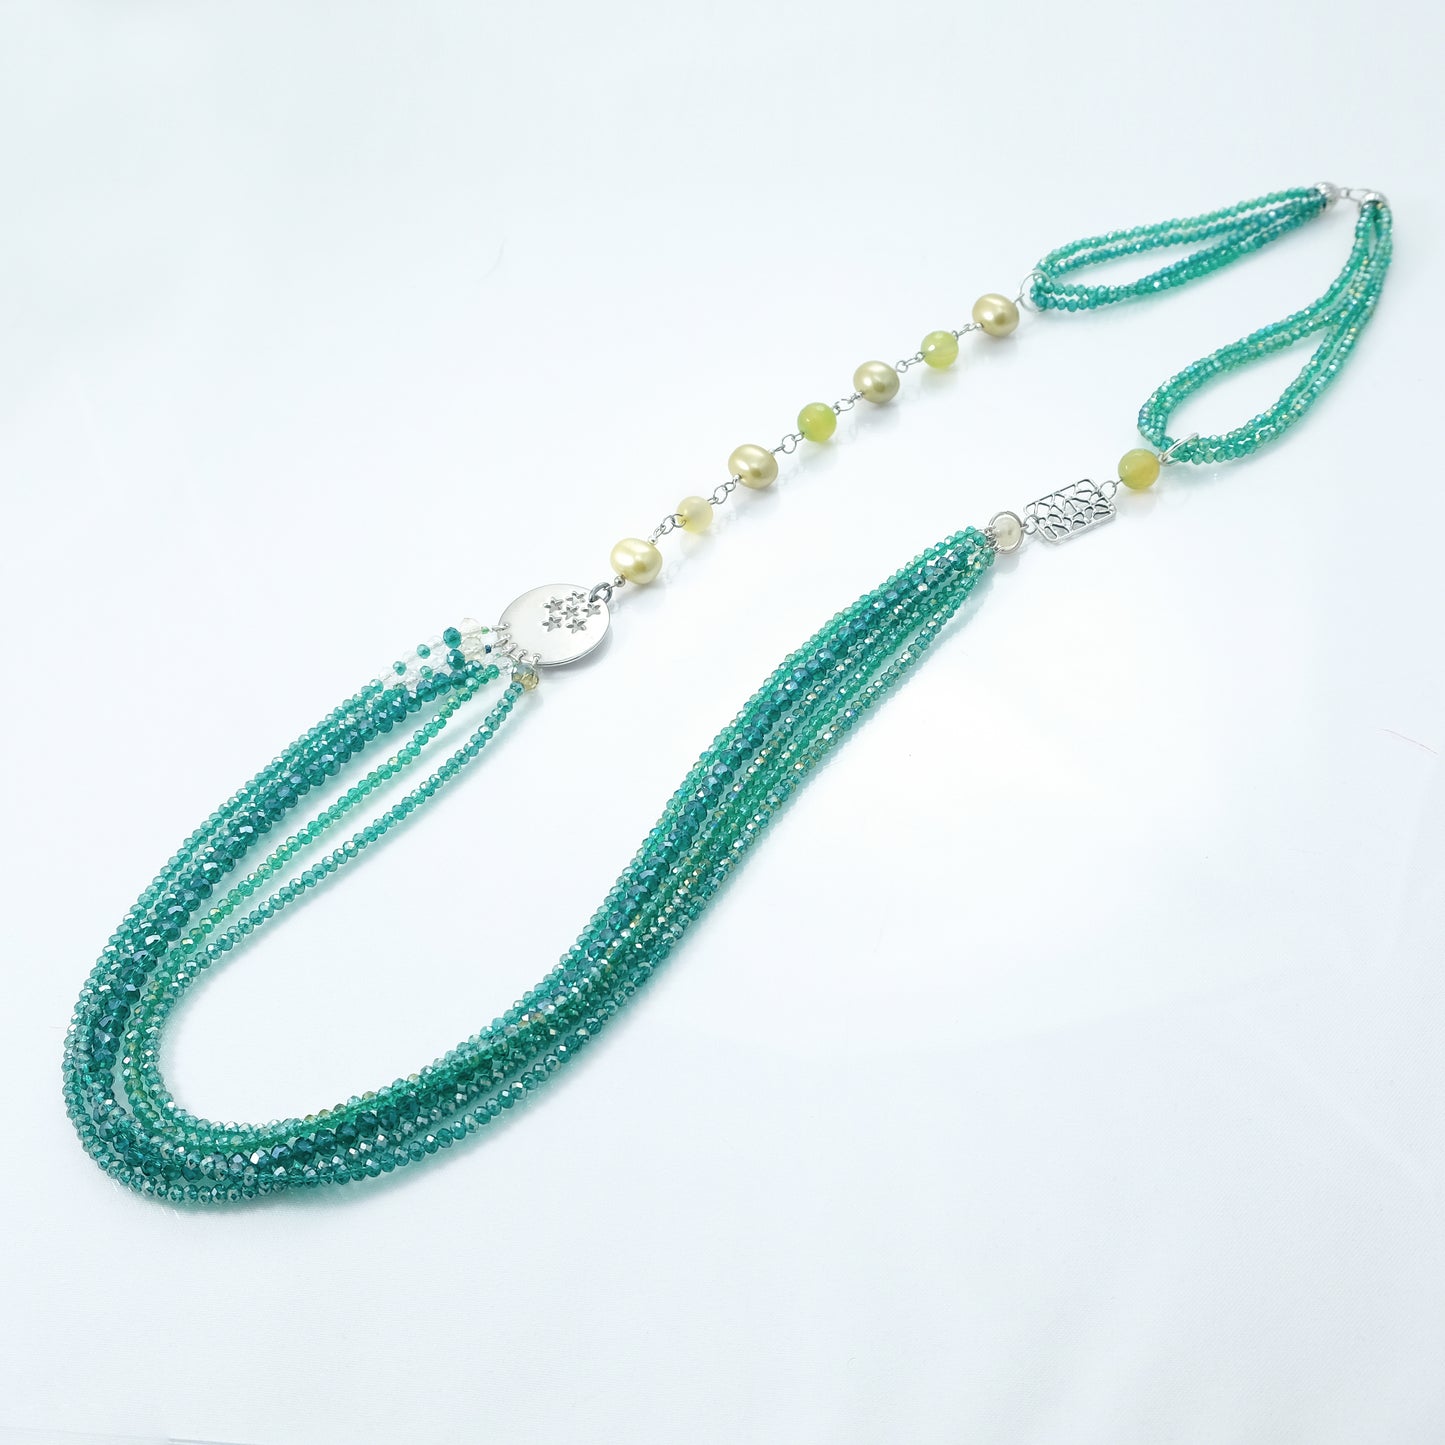 Collana I CRISTALLI .056 cristalli verde smeraldo cangiante, perle elementi acciaio.